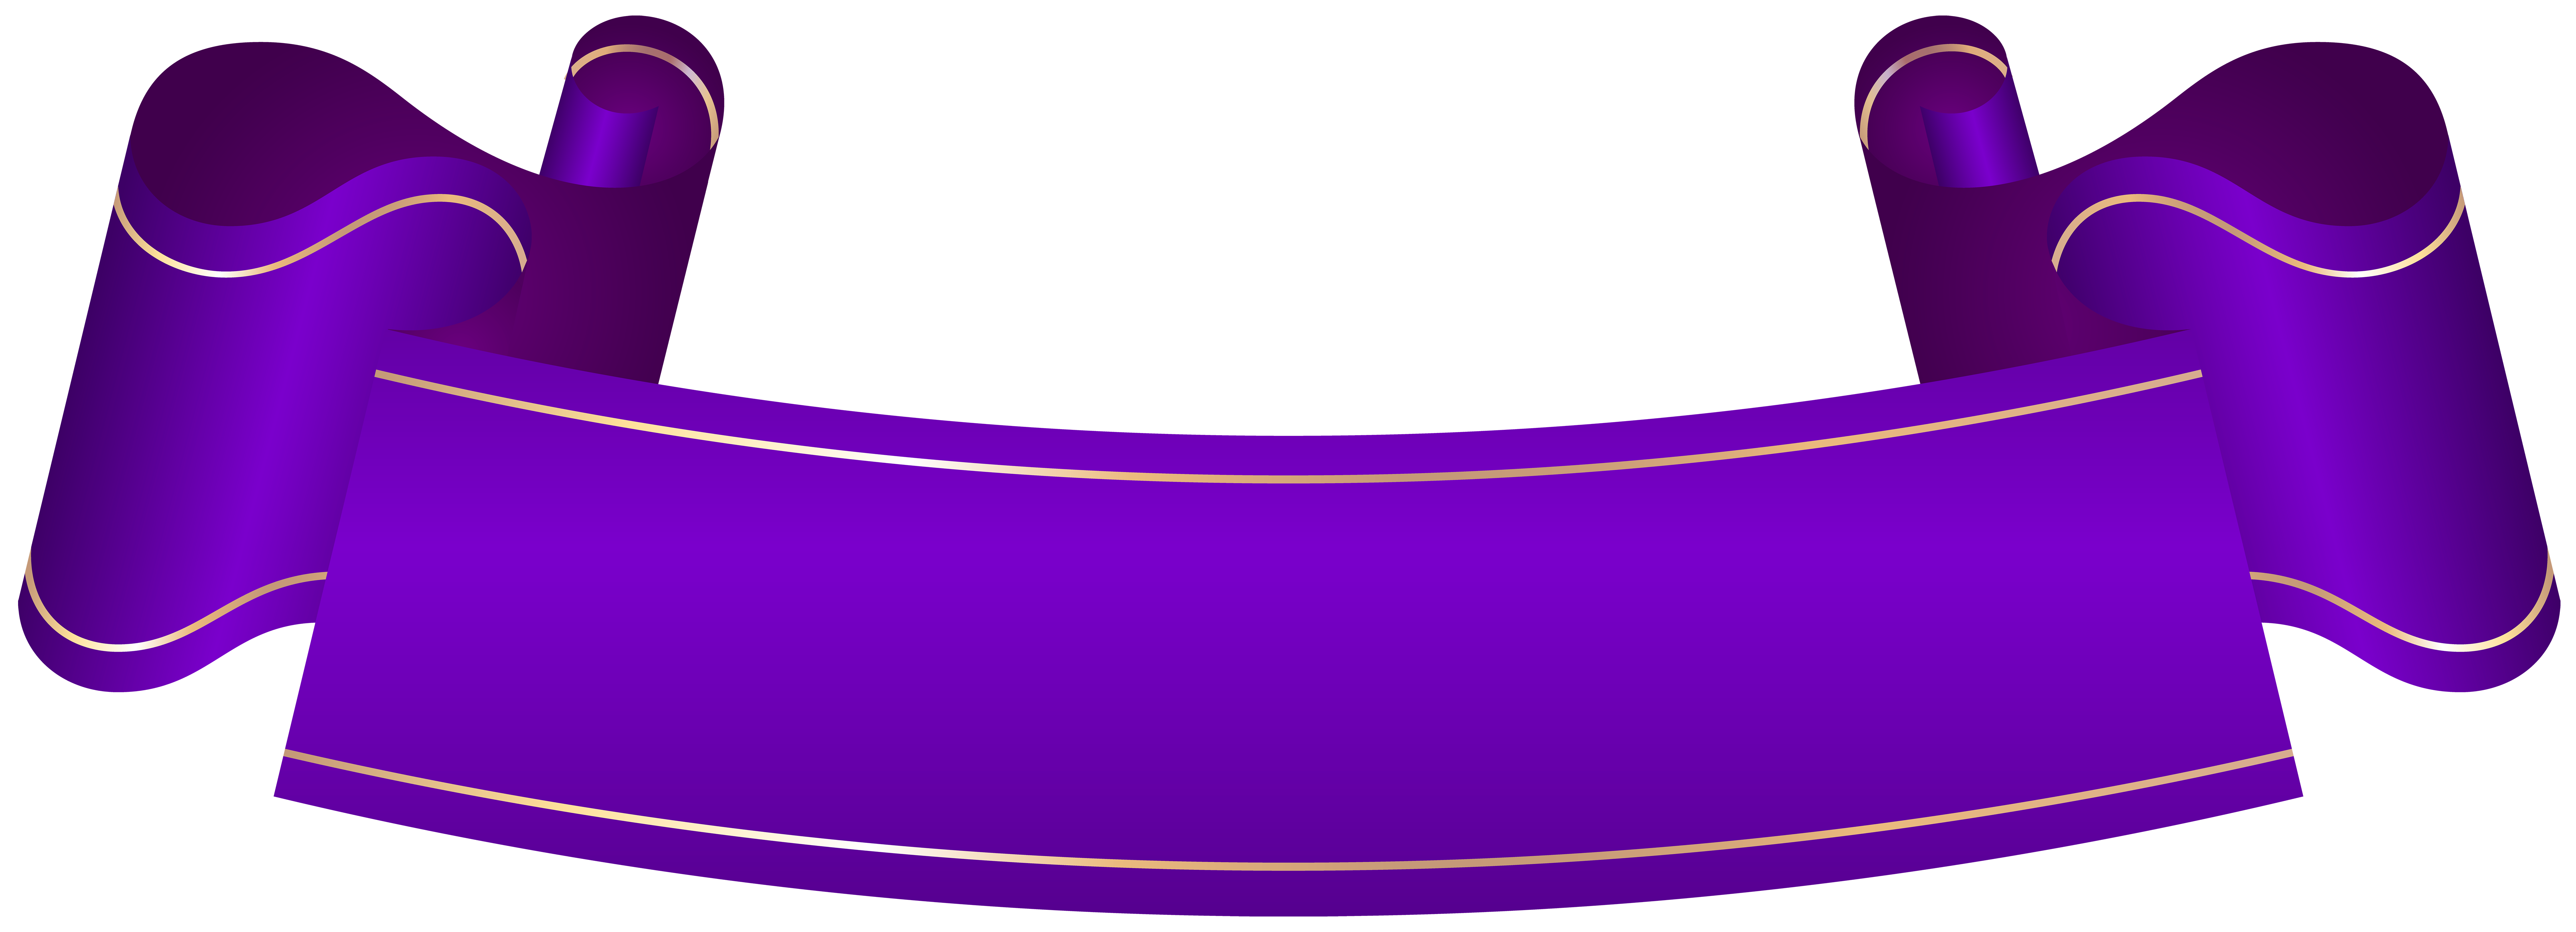 Banner Purple Clip art Purple Banner Transparent Clip Art png 